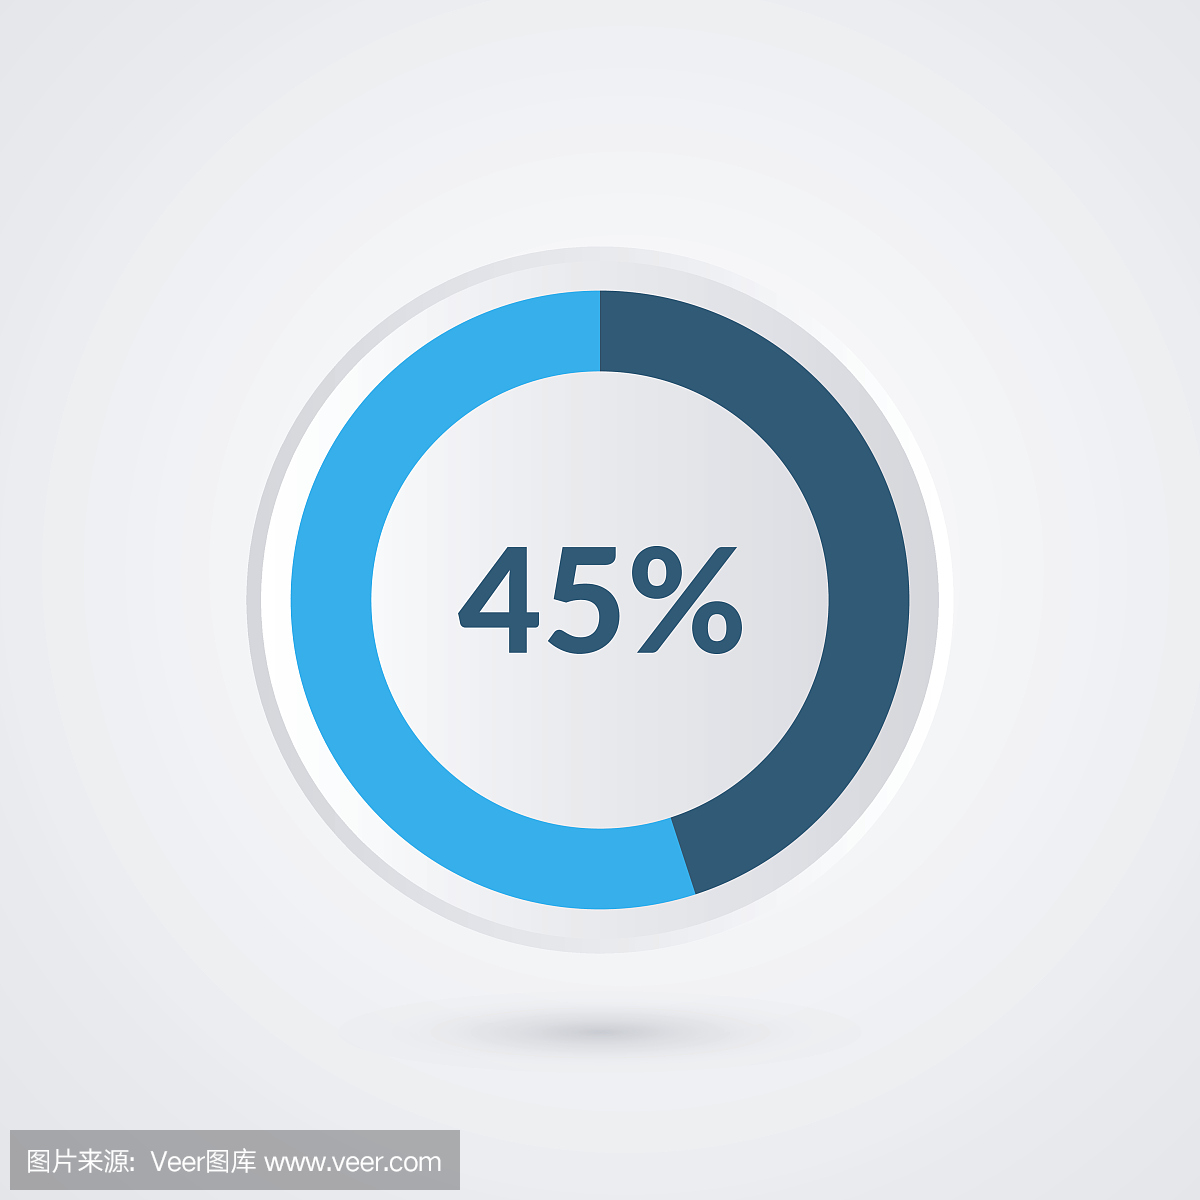 45%的蓝灰色和白色的饼图。百分比矢量图表。